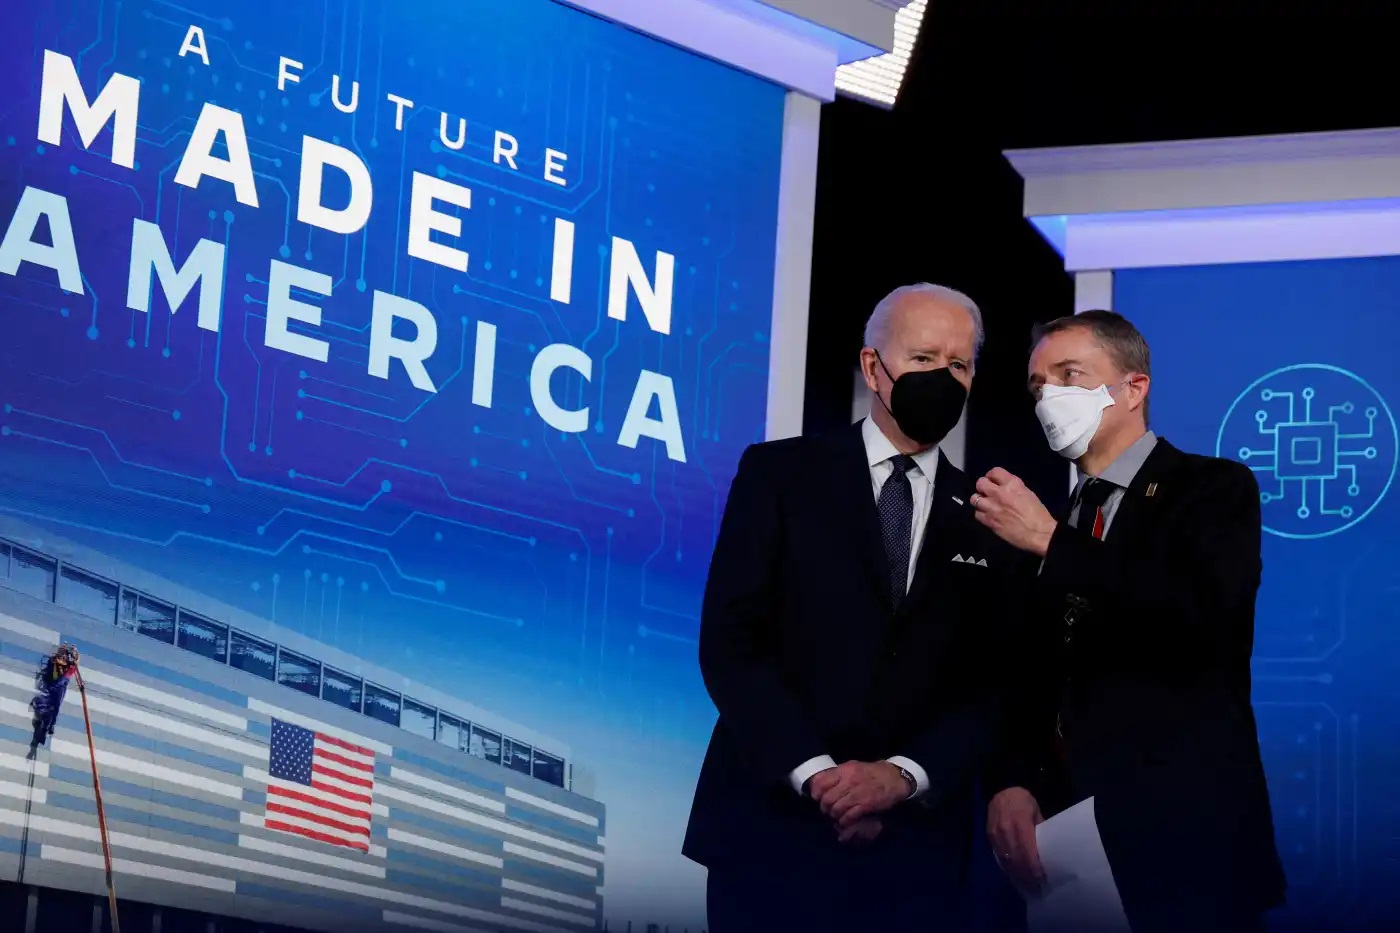 Tổng thống Mỹ Joe Biden, trái, cùng Giám đốc điều hành Intel Pat Gelsinger ở Washington để công bố kế hoạch của công ty đối với các cơ sở sản xuất chip trị giá hơn 20 tỷ đô la ở Ohio vào ngày 21 tháng 1. © Reuters